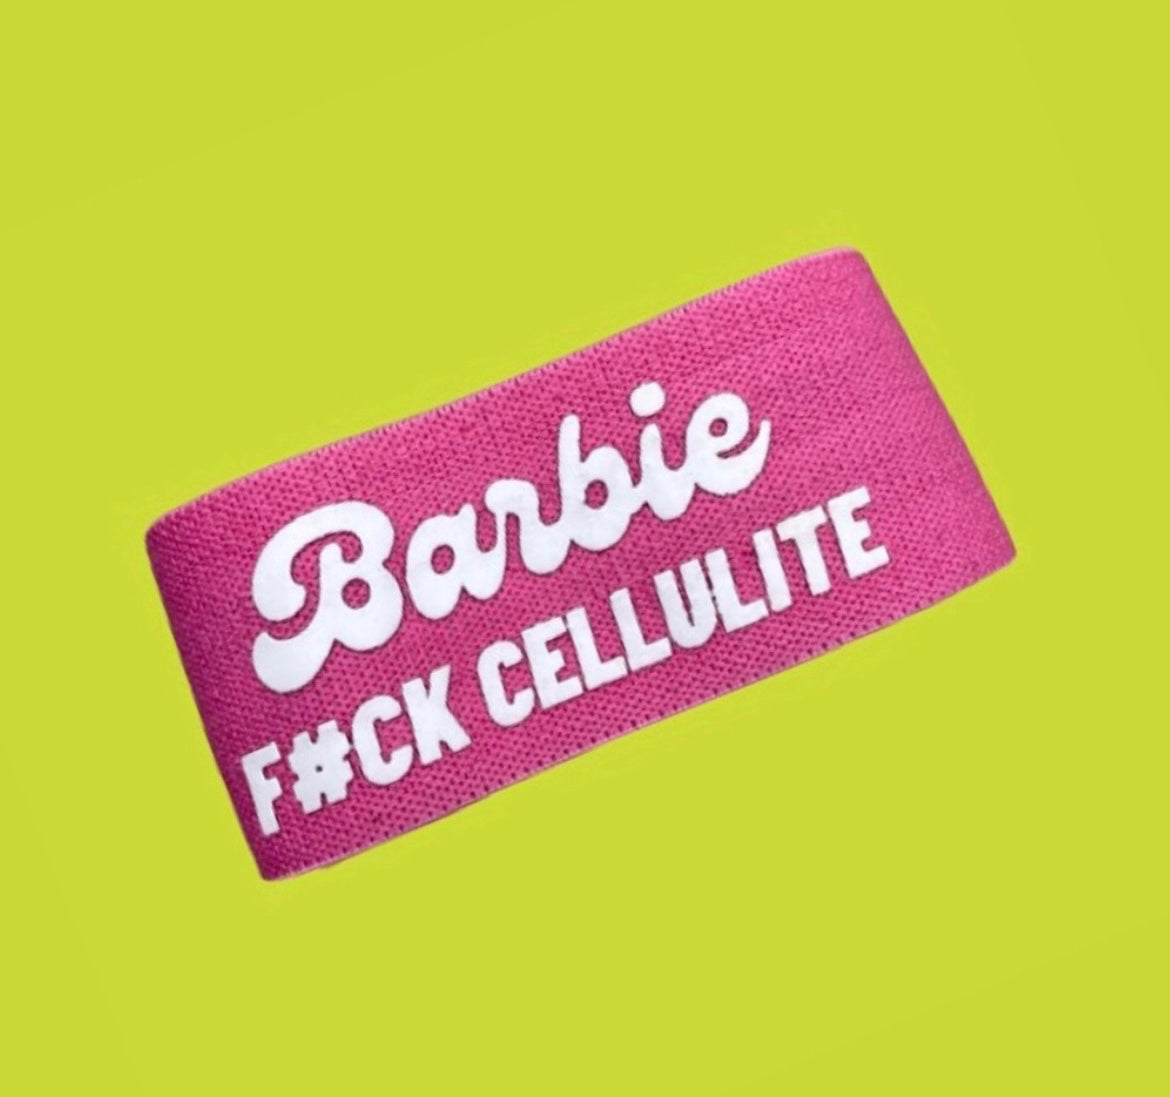 Roze Barbie Bootyband. Quote Cellulite van de film Barbie. 